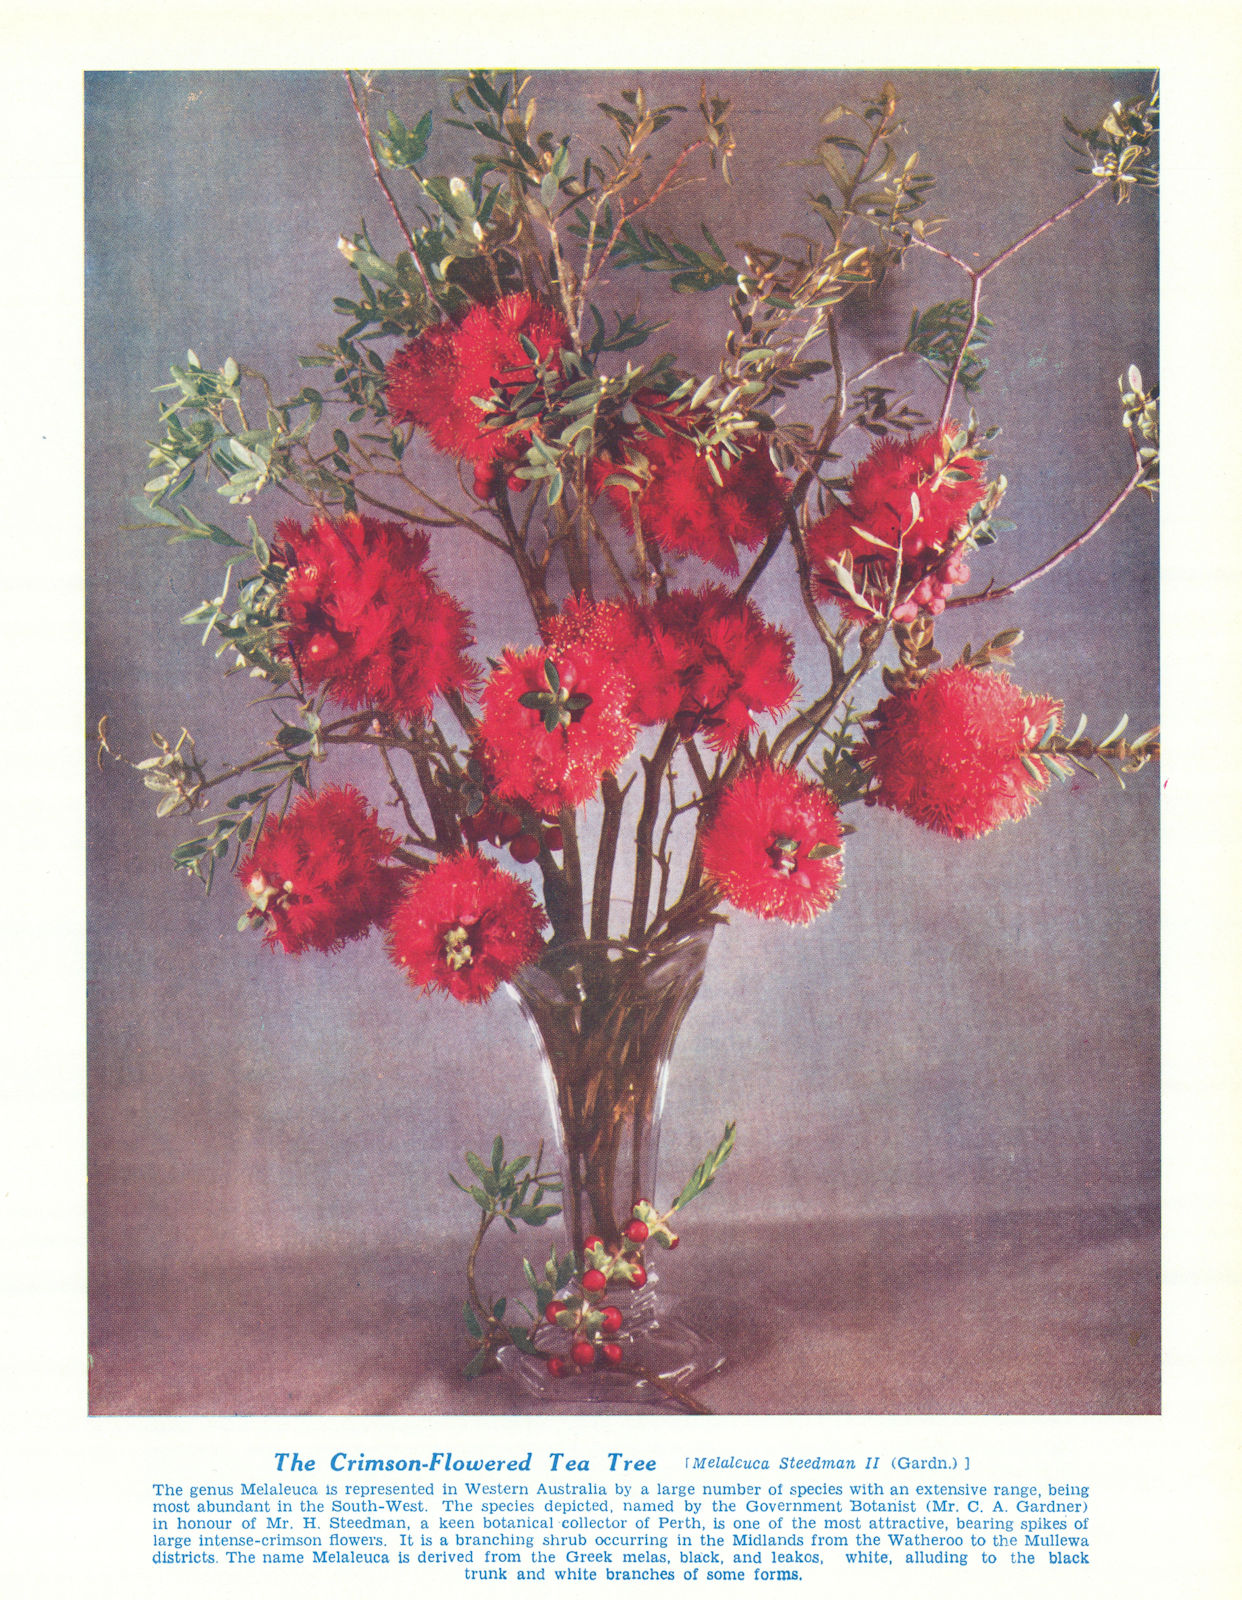 Associate Product Crimson-flowered Tea Tree (Melaleuca Steedmanii) Australian Wild Flower 1950